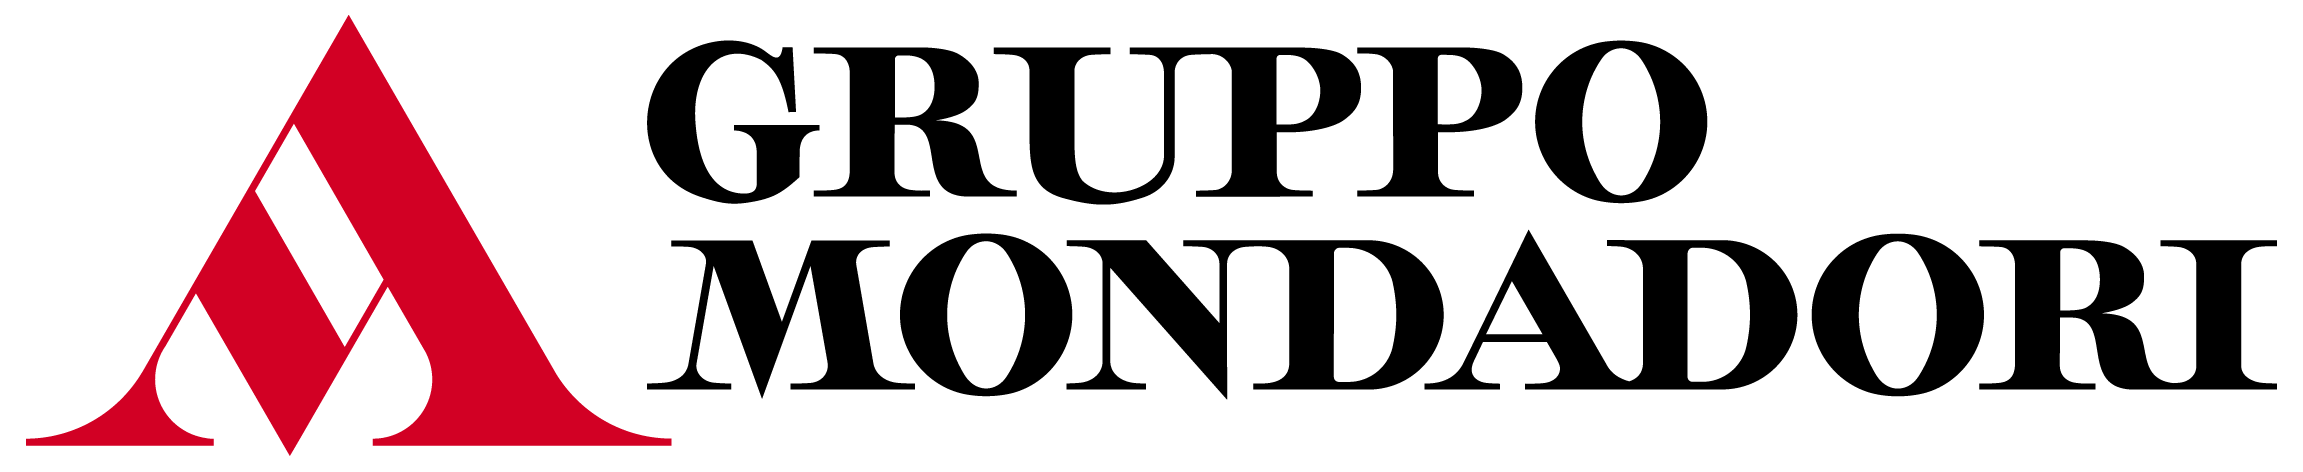 Gruppo Mondadori logo